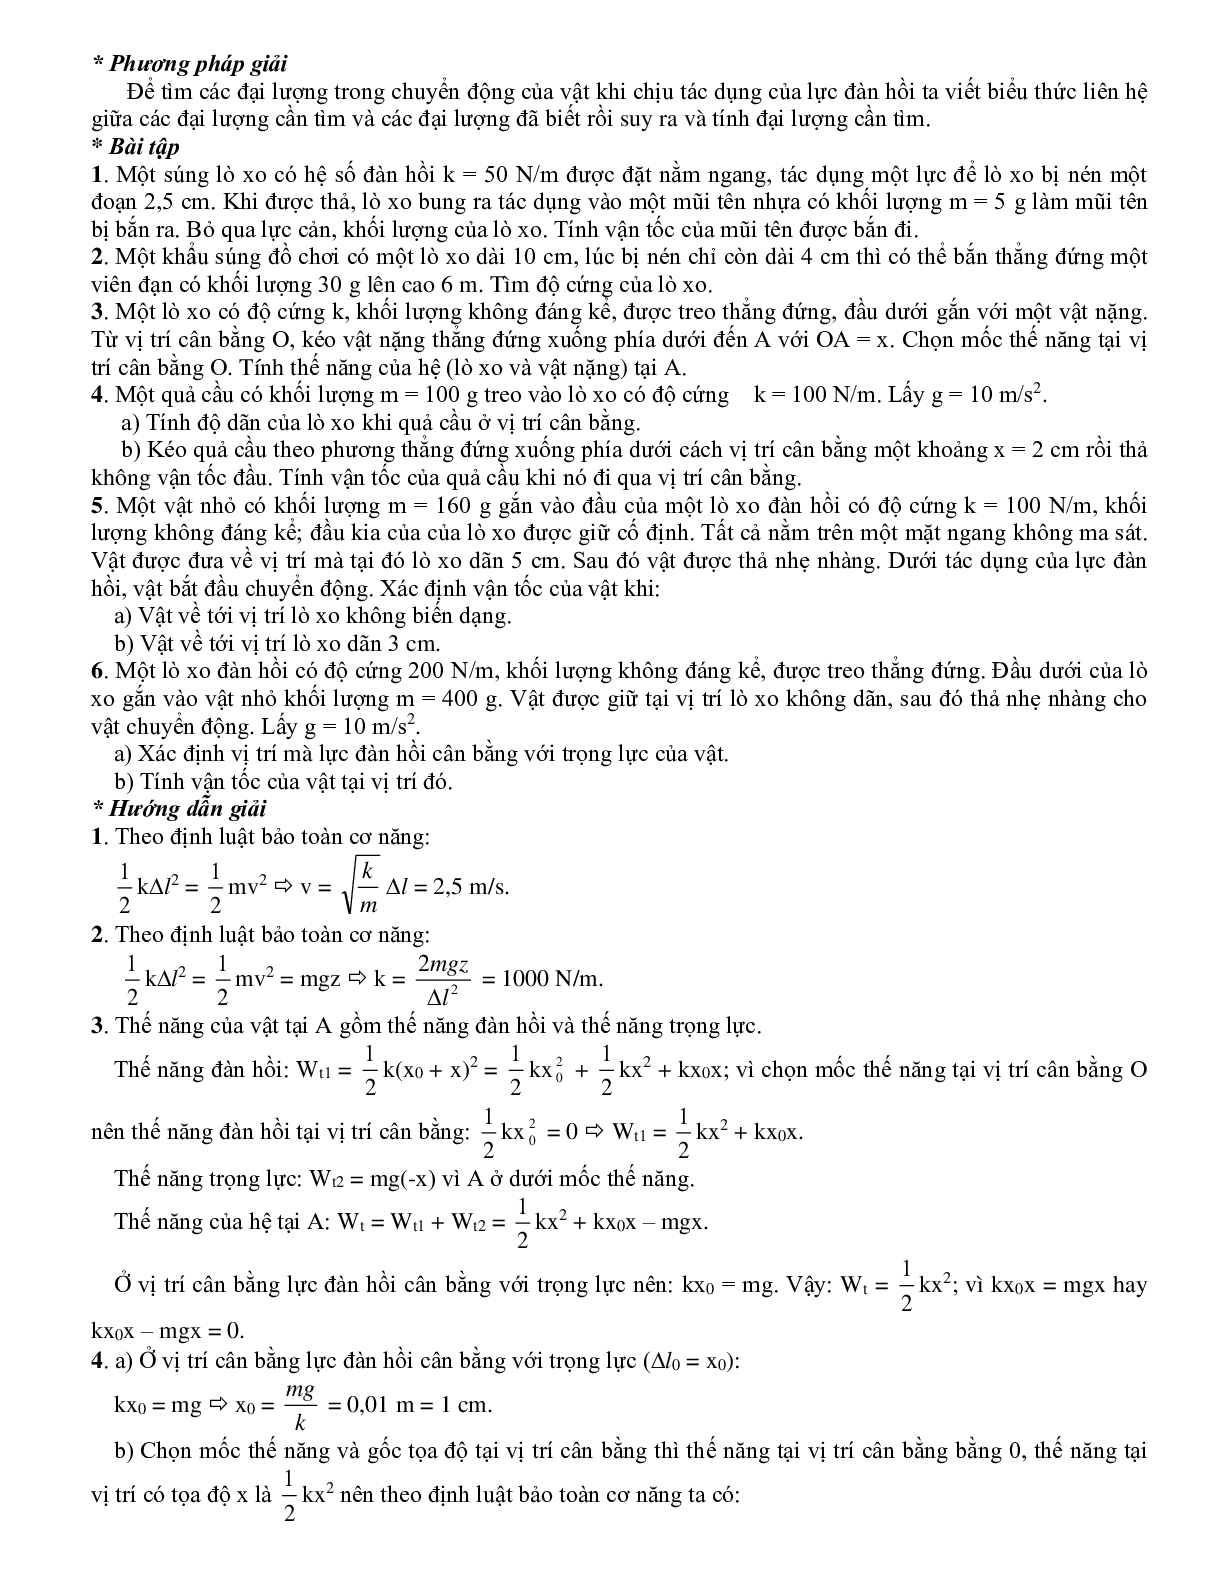 Chuyên đề Các định luật bảo toàn môn Vật lý lớp 10 (trang 9)